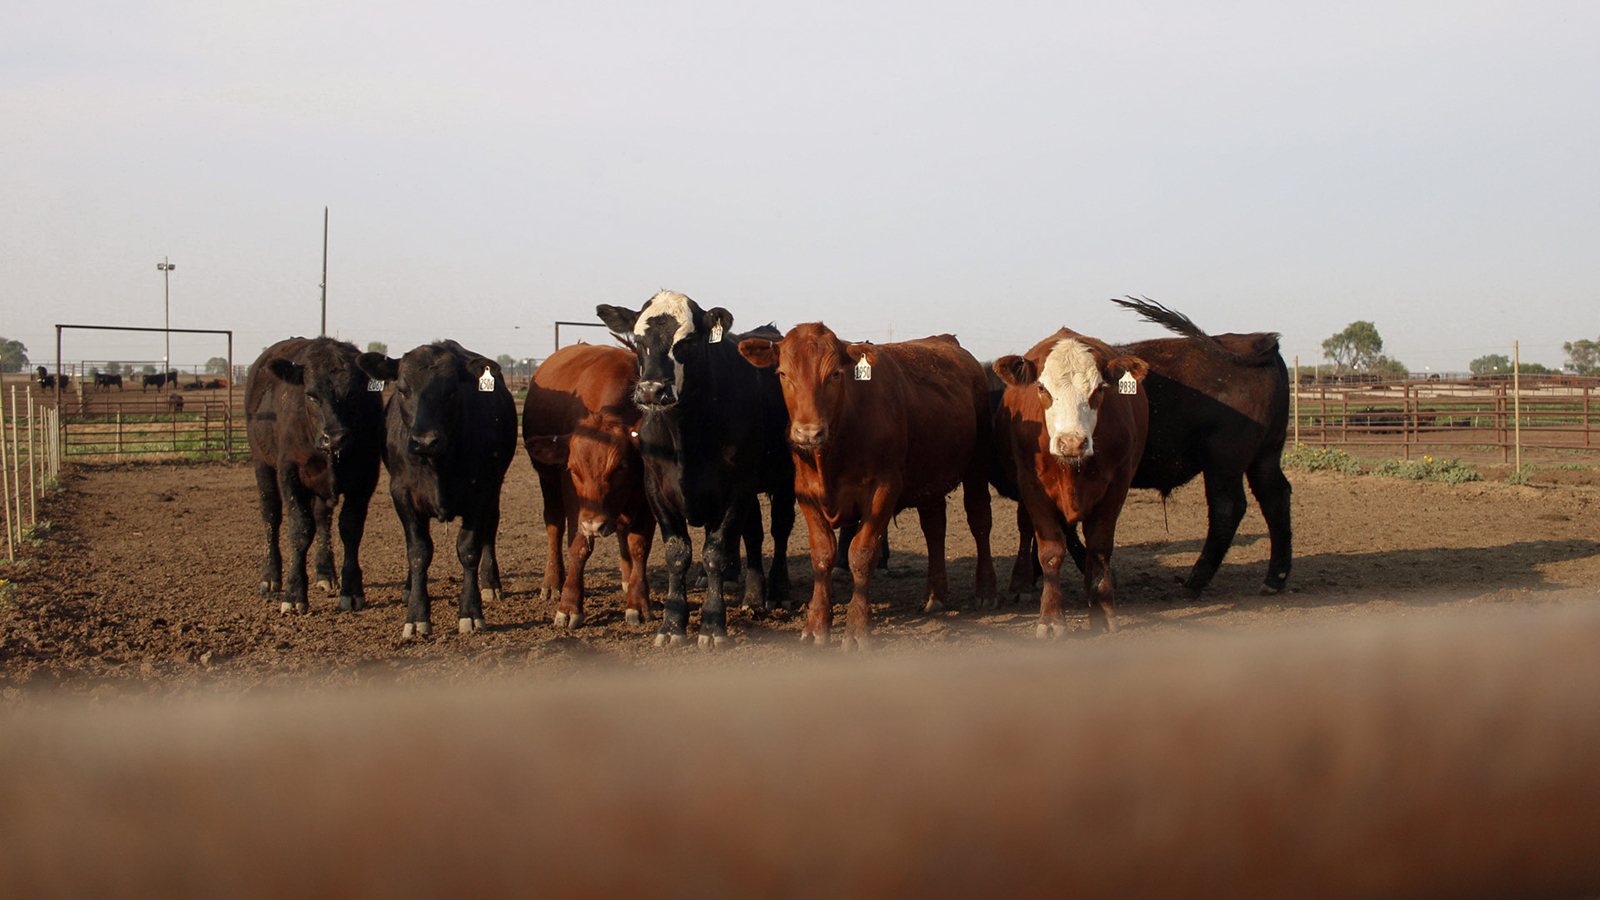 cattle in a feedyard